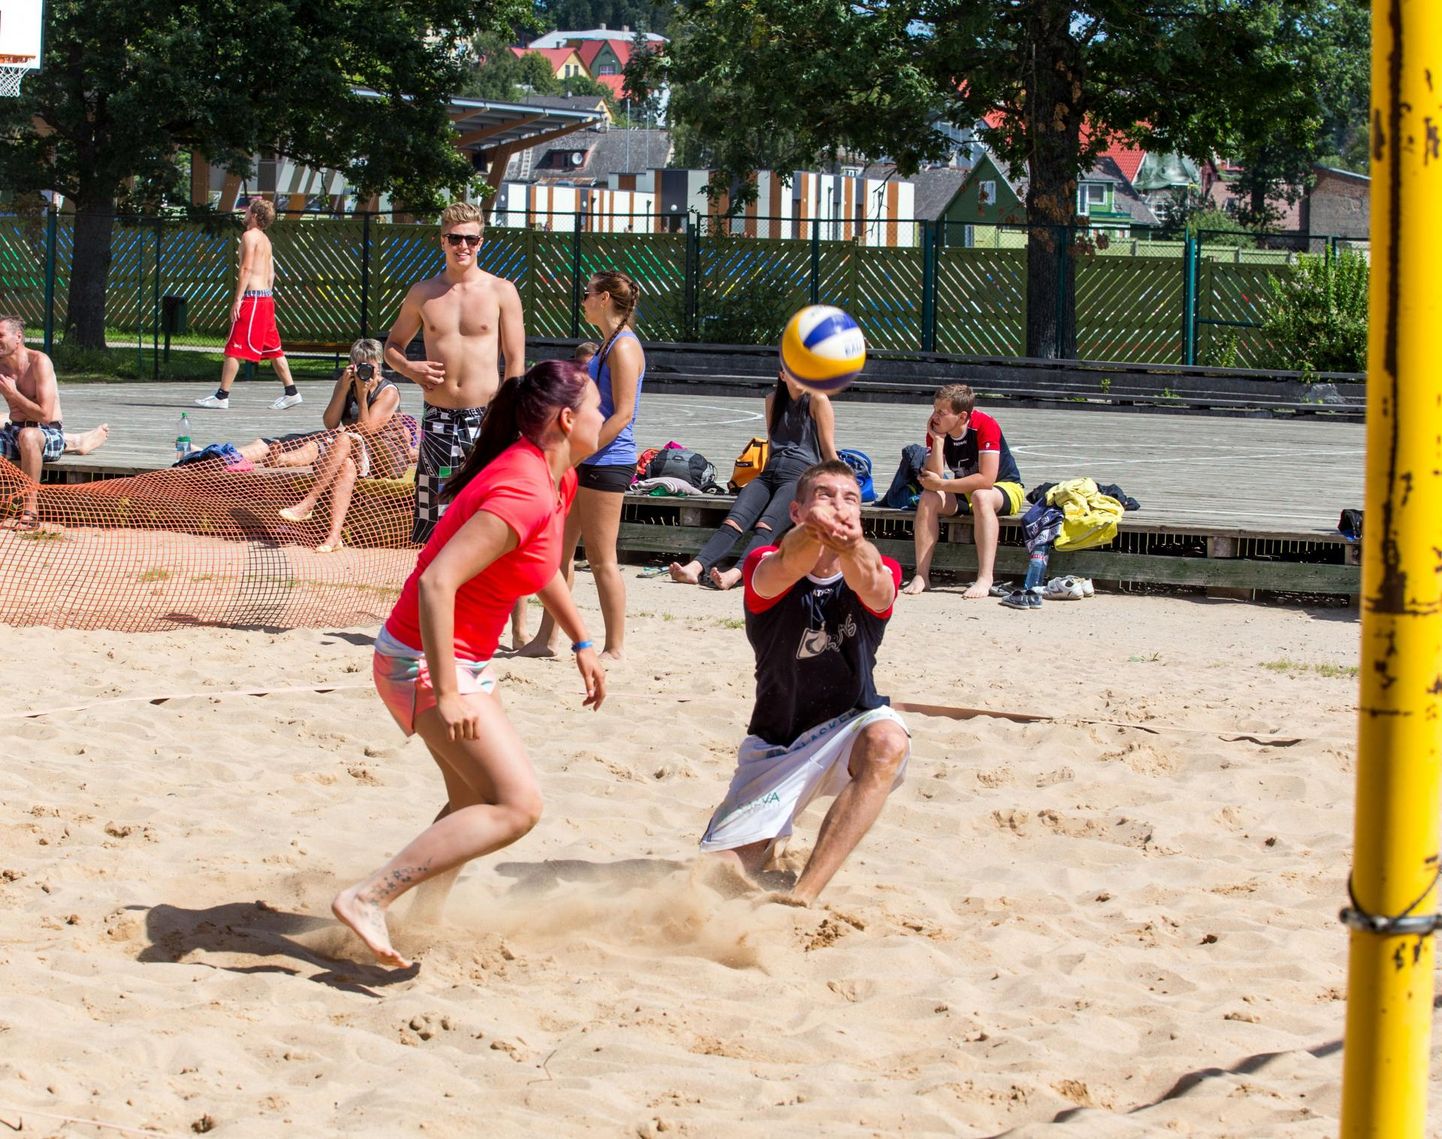 Pühapäeval peetakse Viljandi järve ääres maakonna rannavõrkpalli meistrivõistlusi.